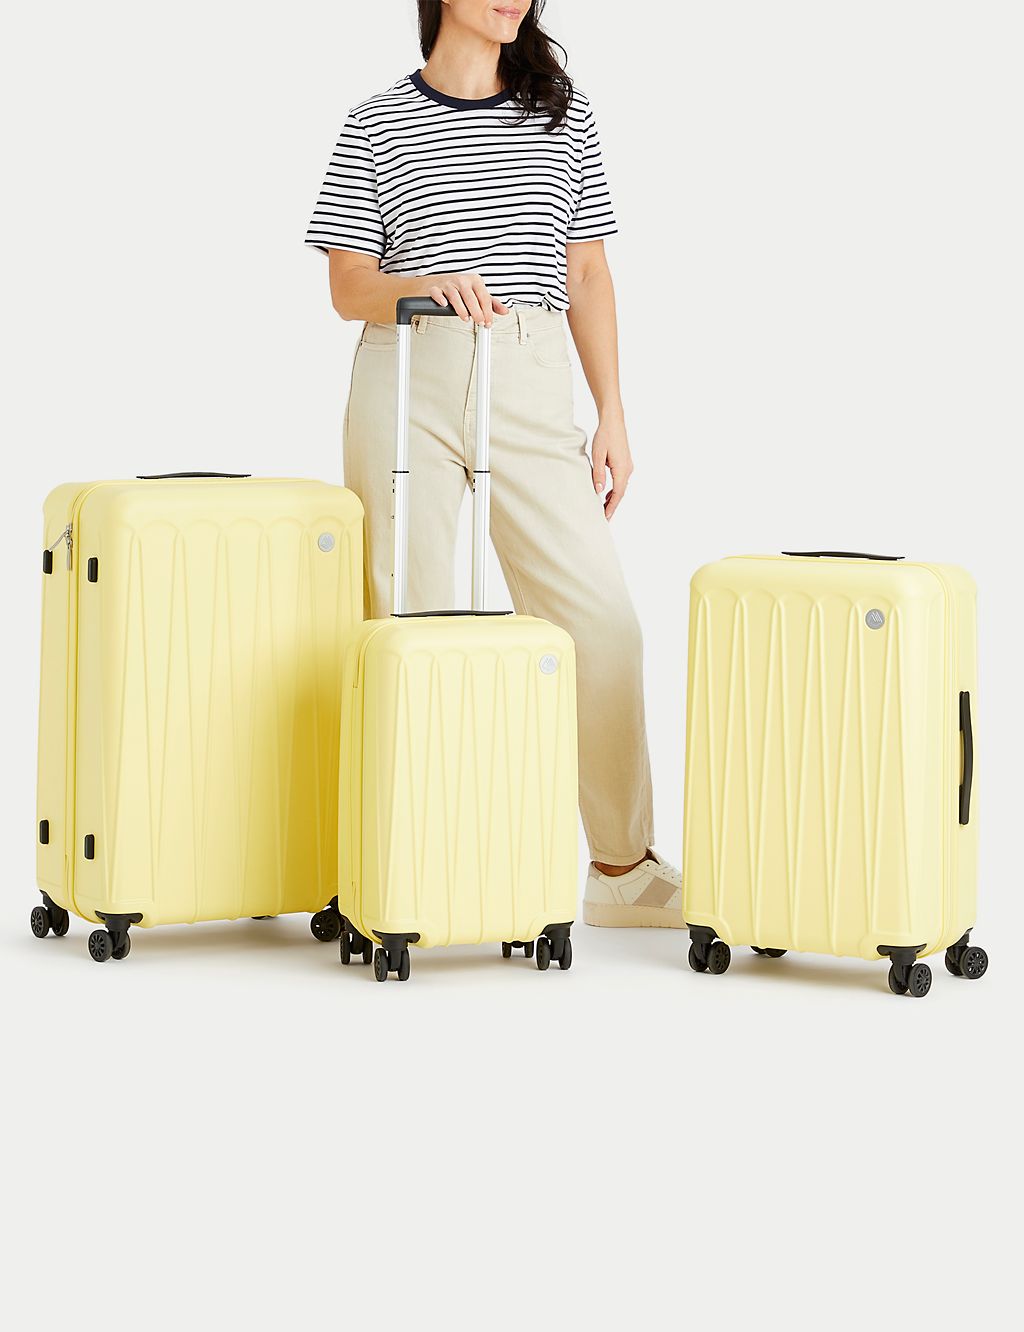 Amalfi 4 Wheel Hard Shell Large Suitcase 6 of 10